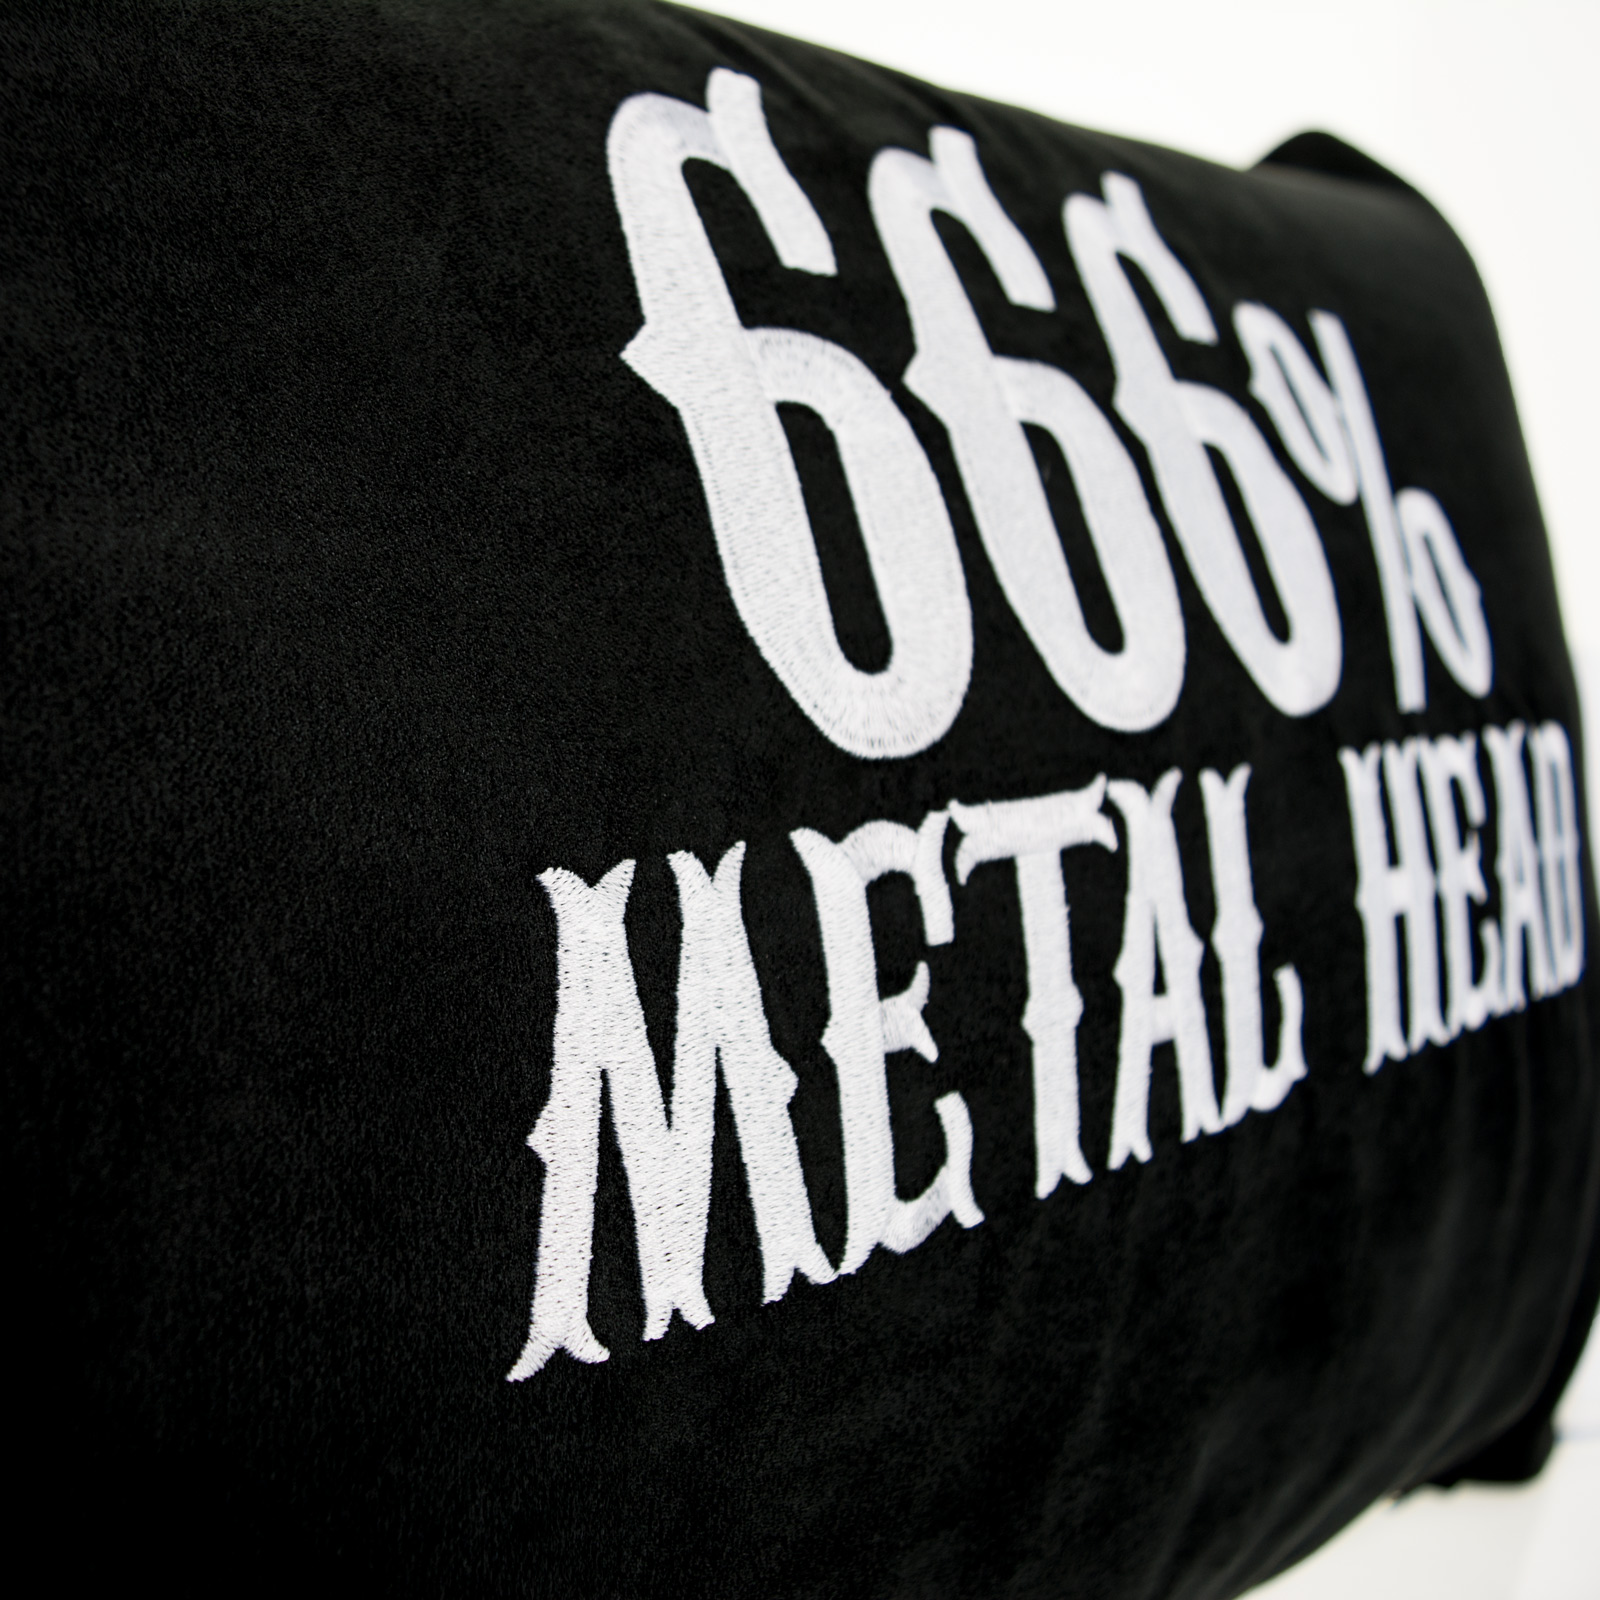 666% Metal Head - Kissen